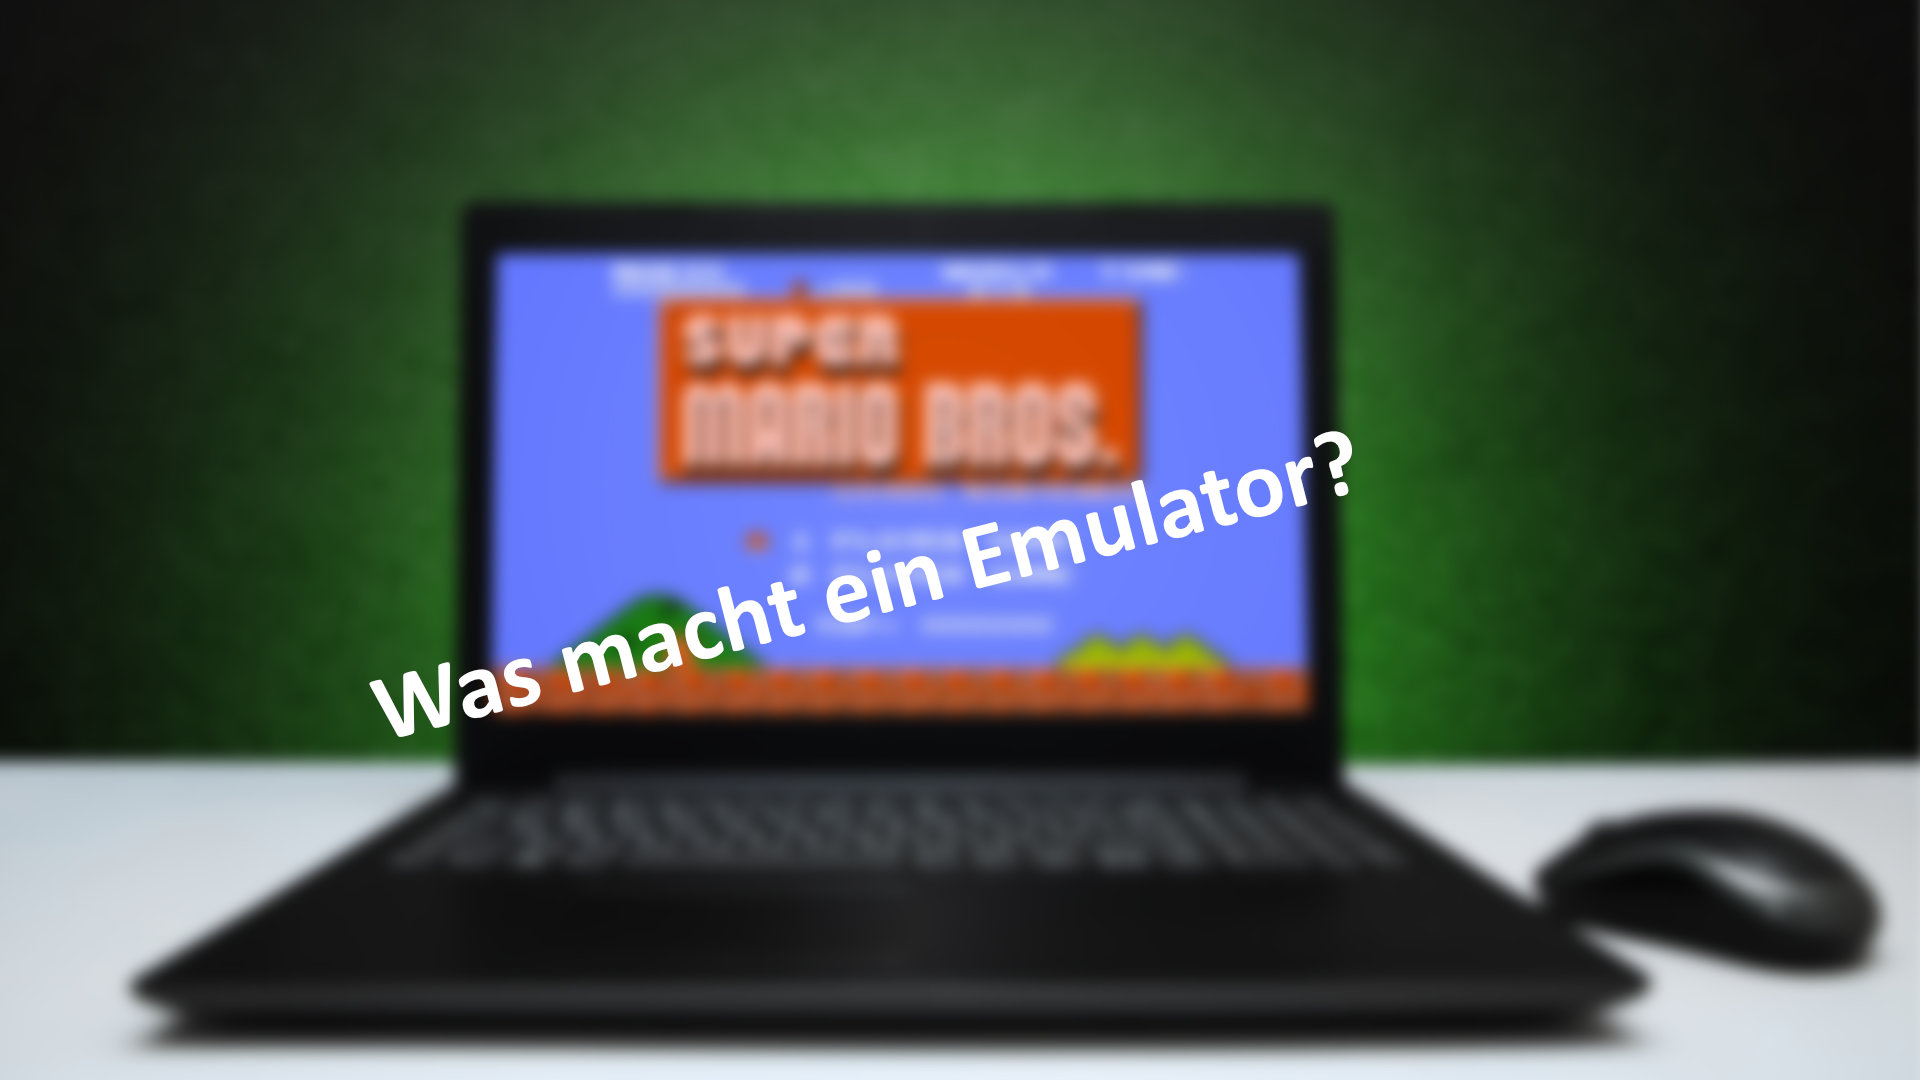 Was macht ein Emulator?